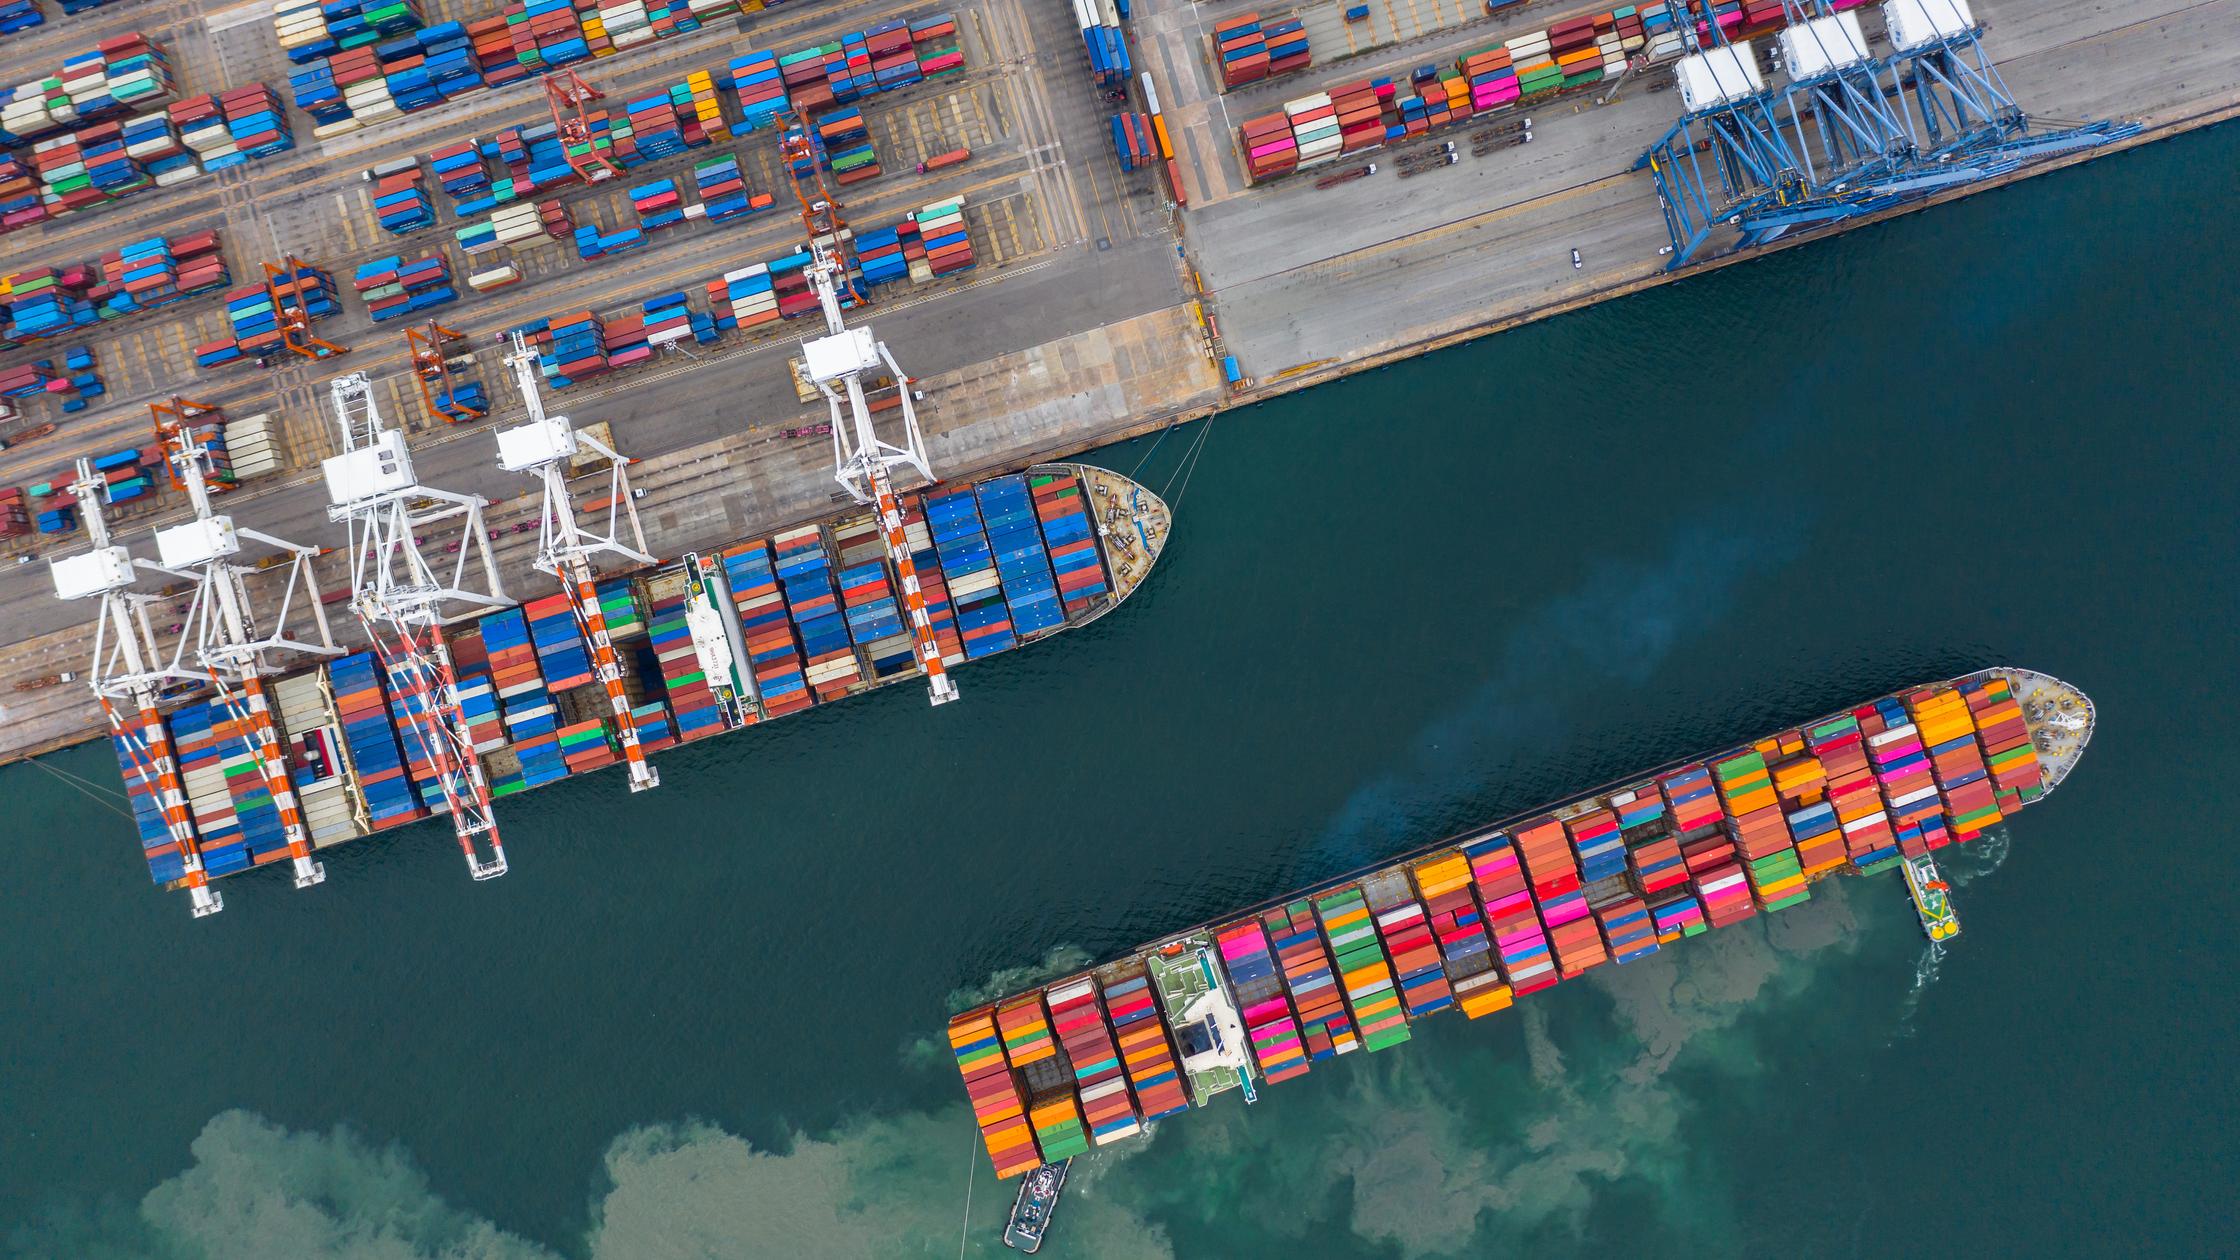 Supply chain : cargo ships